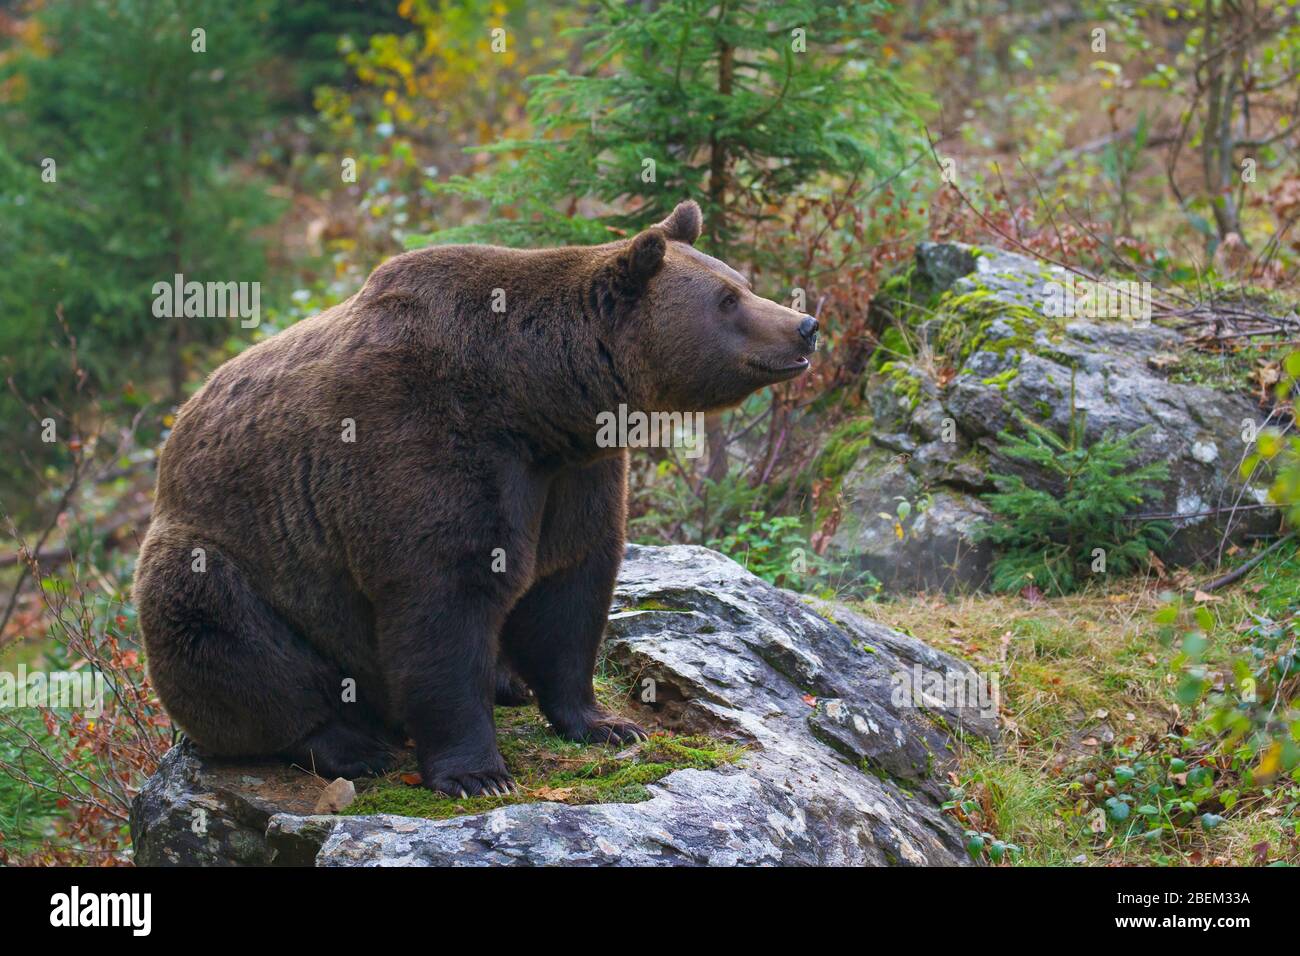 European brown bear (Ursus arctos arctos) at the Tierfreigelände, animal park in the Bavarian Forest National Park, Neuschönau, Lower Bavaria, Germany Stock Photo